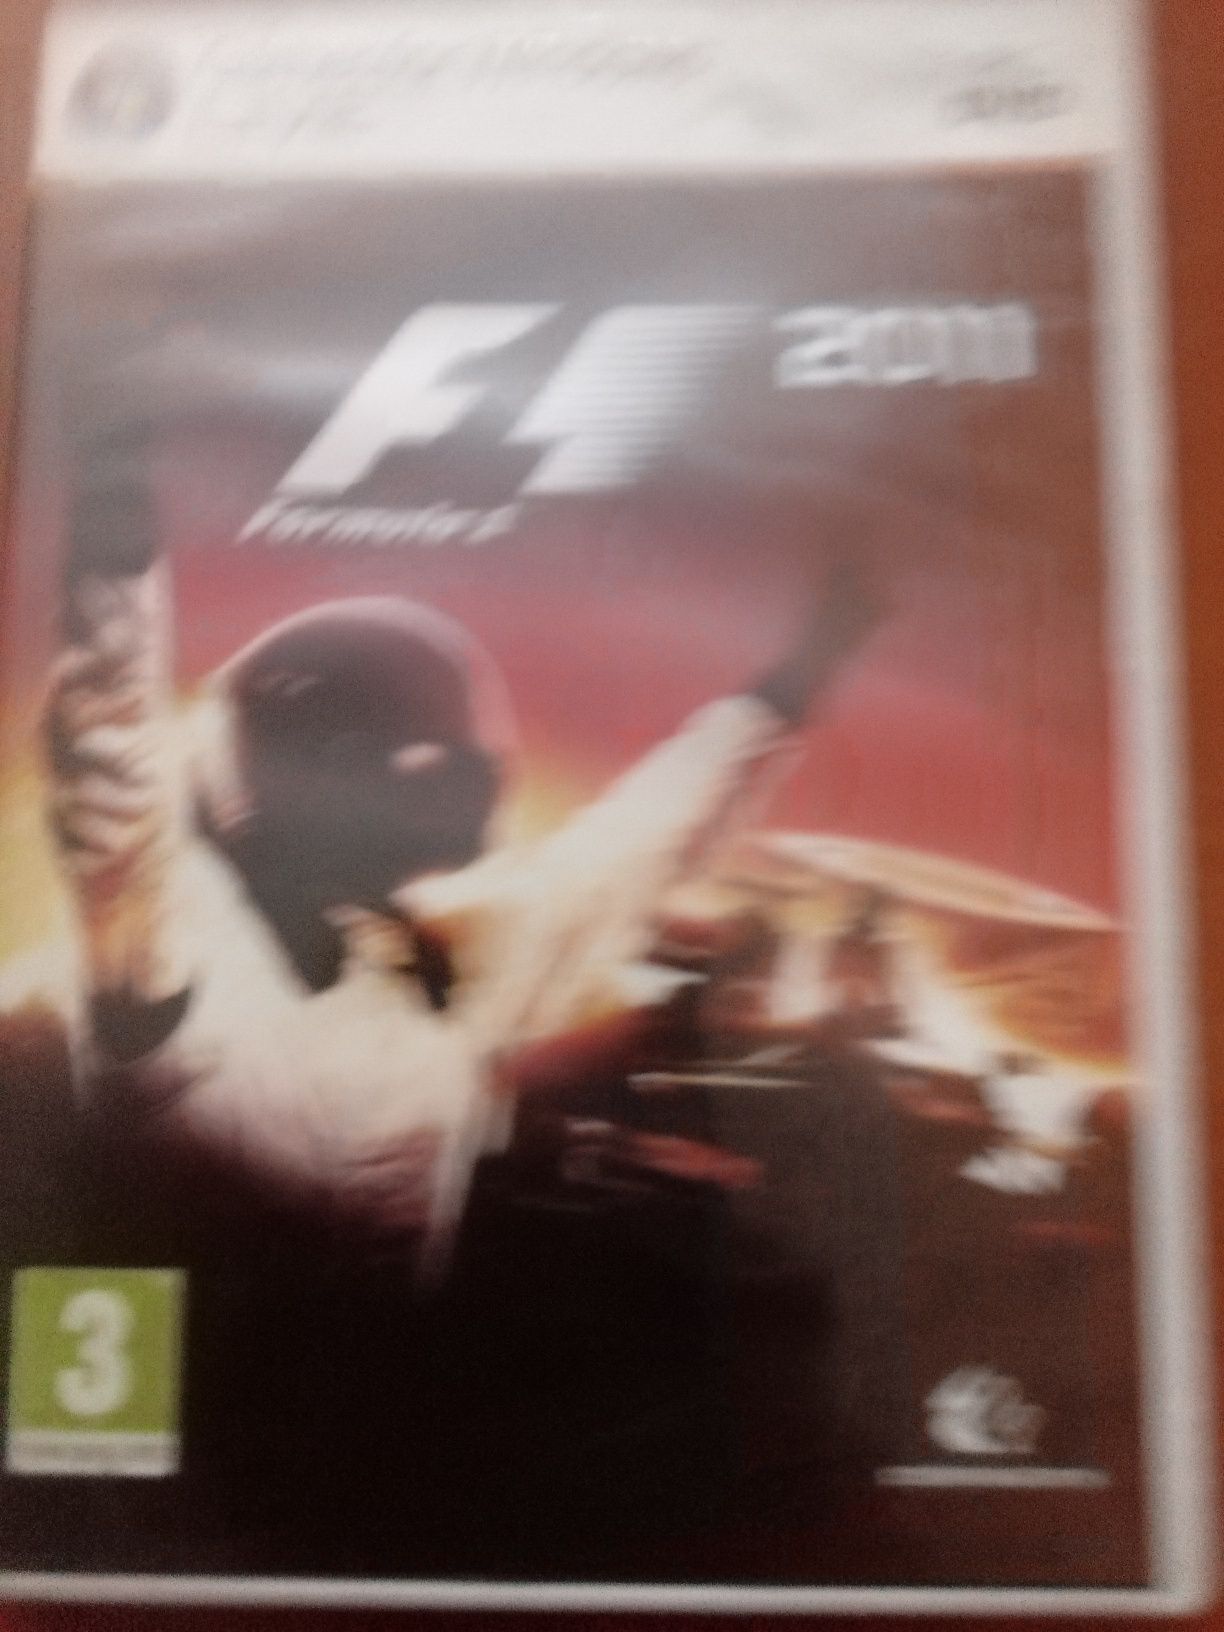 Super Gra PC DVD Formuła 1 2011 możliwa wysyłka olx